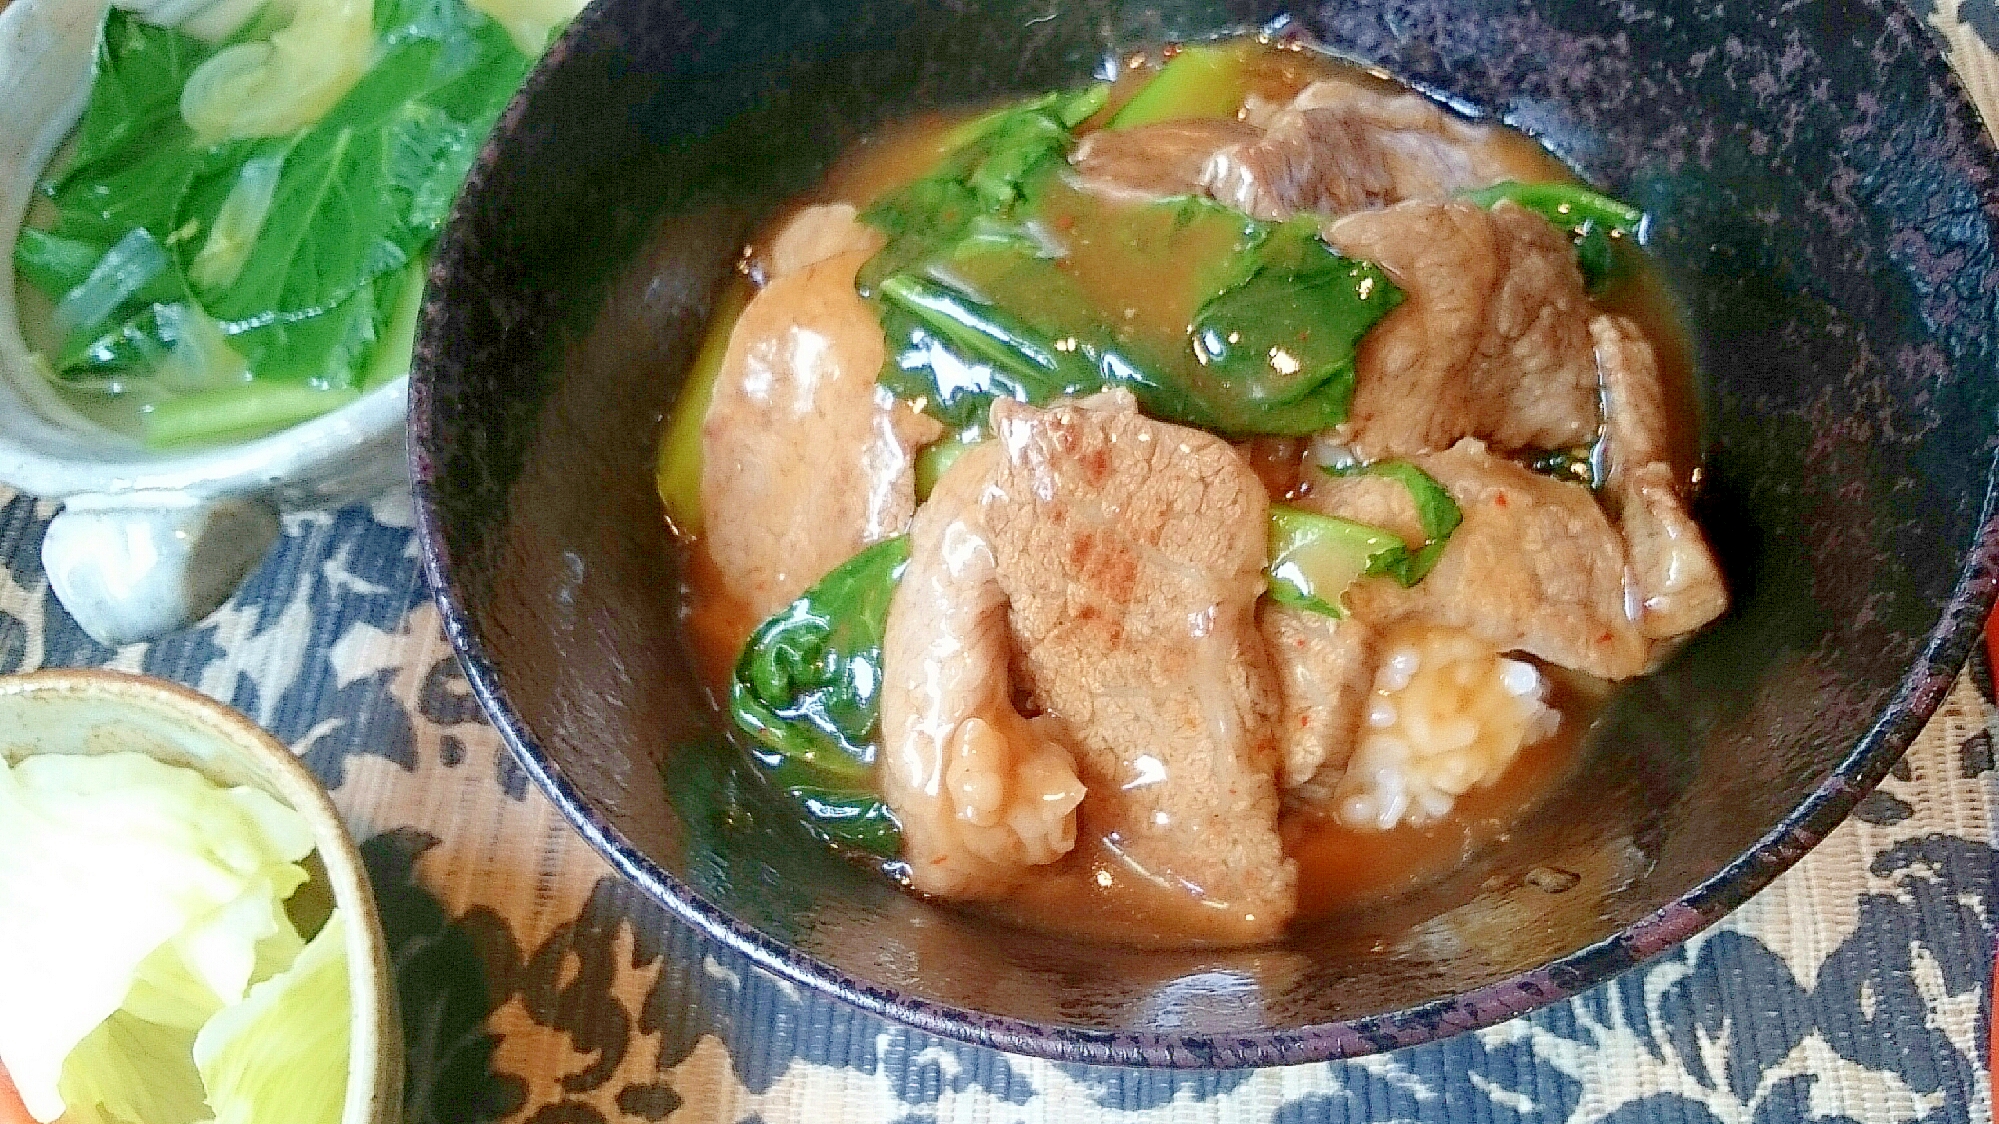 小松菜と牛肉の中華あんかけ丼